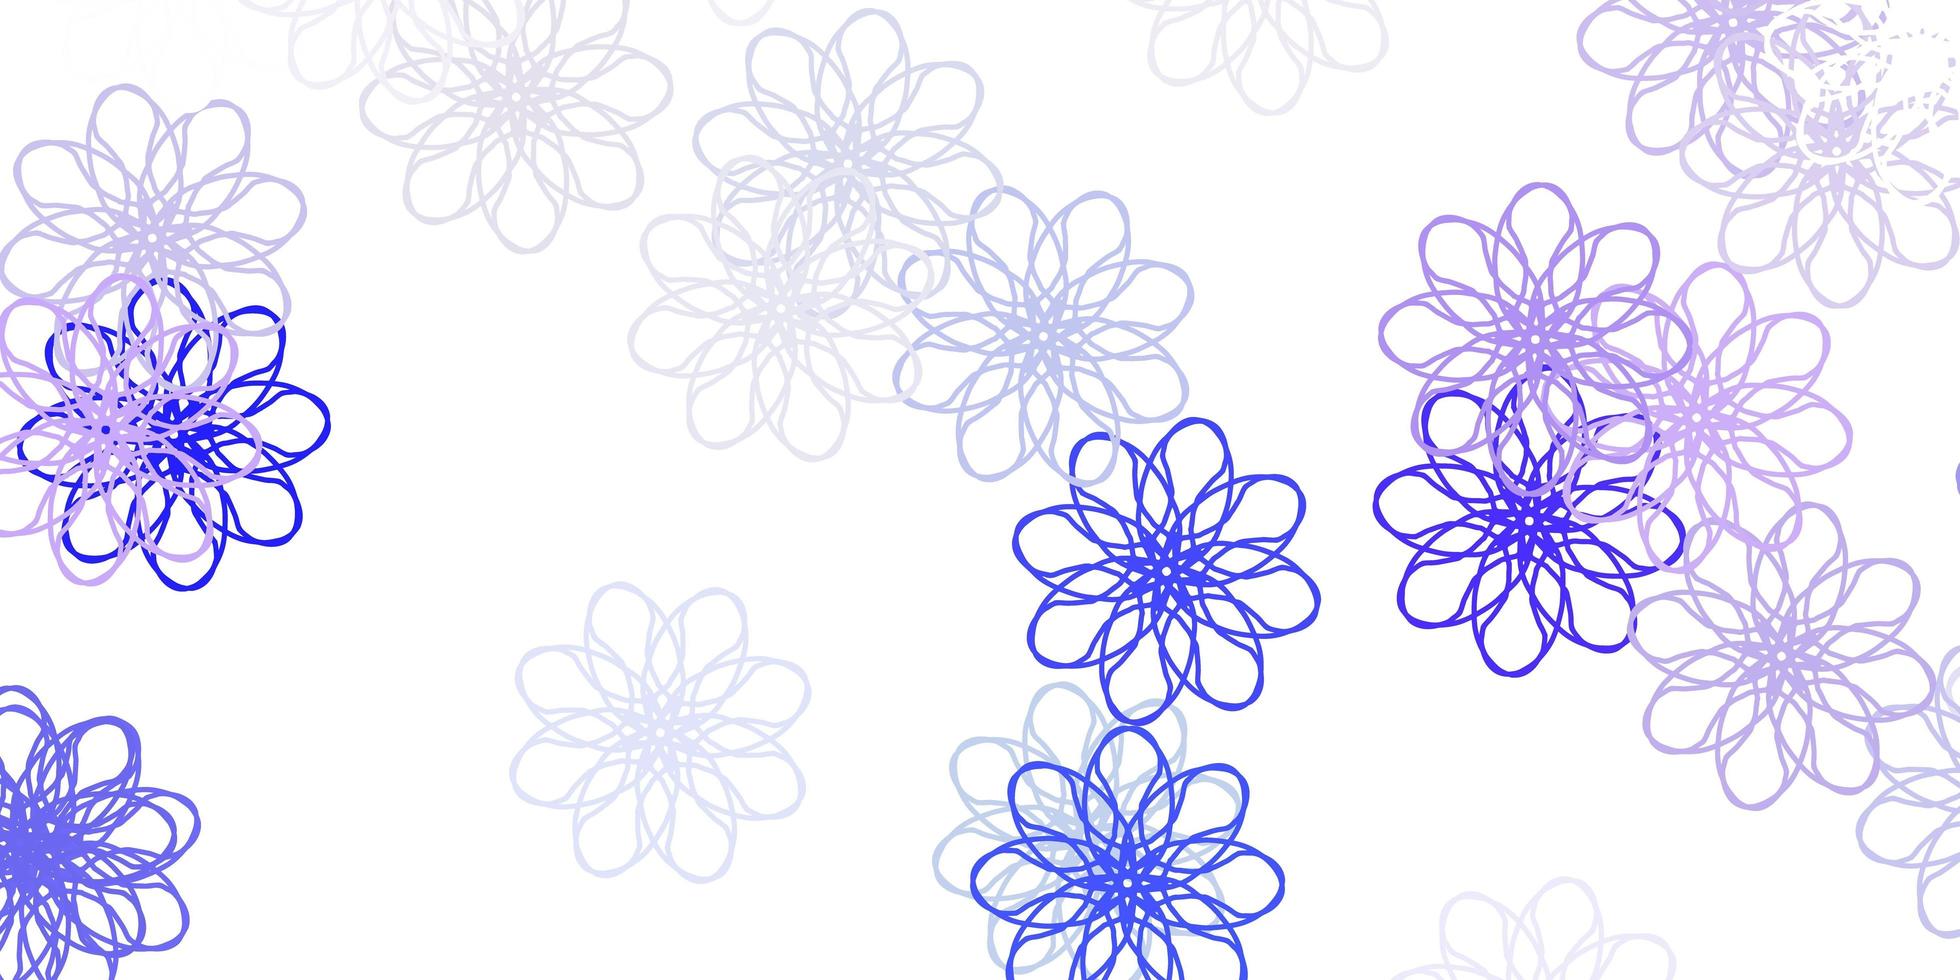 ljus lila vektor doodle mönster med blommor.